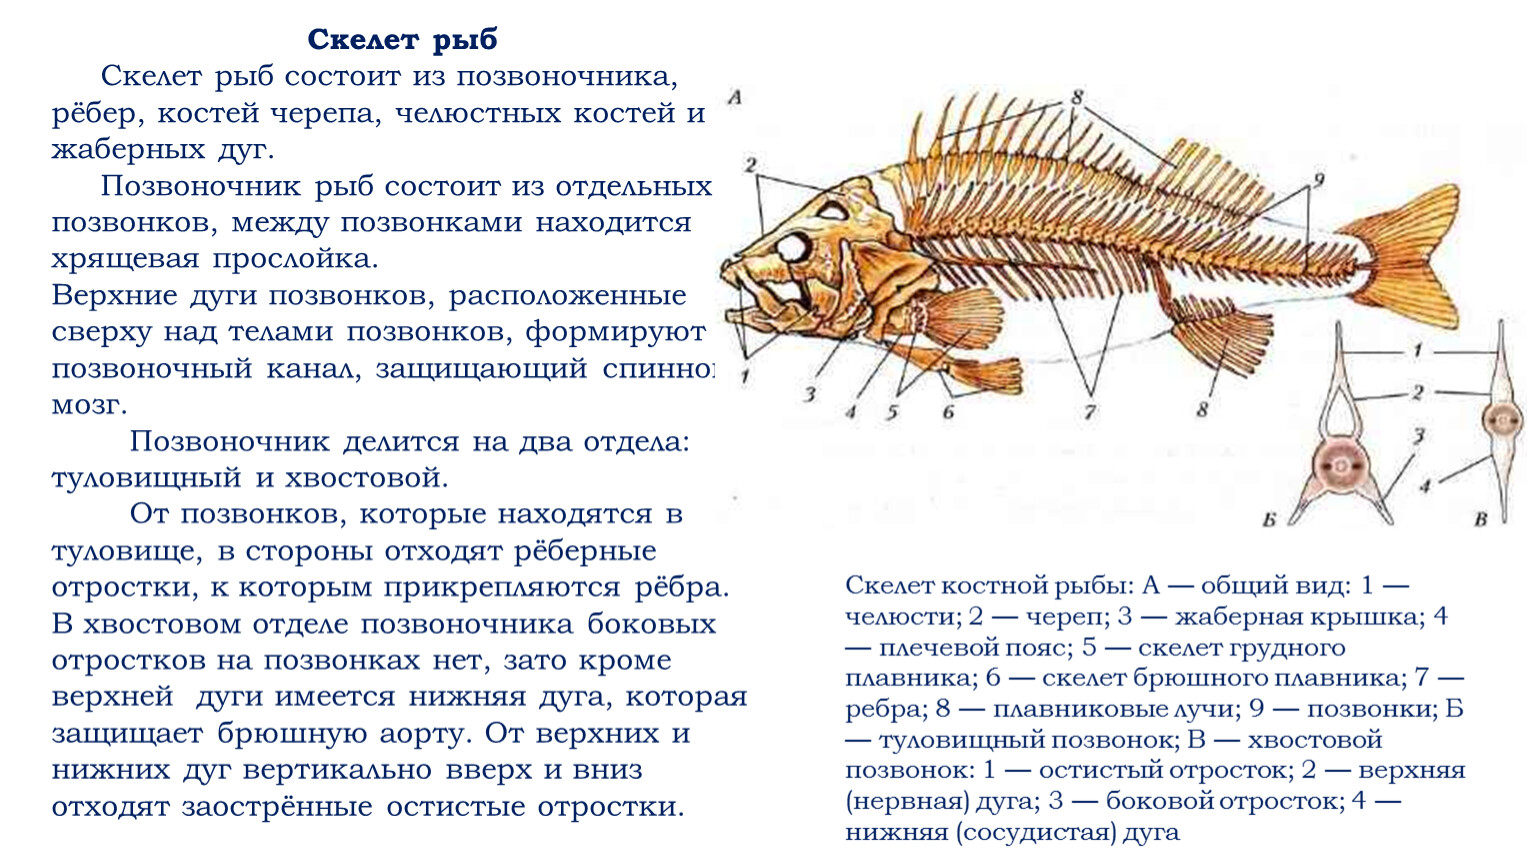 Скелет рыбы состоит из